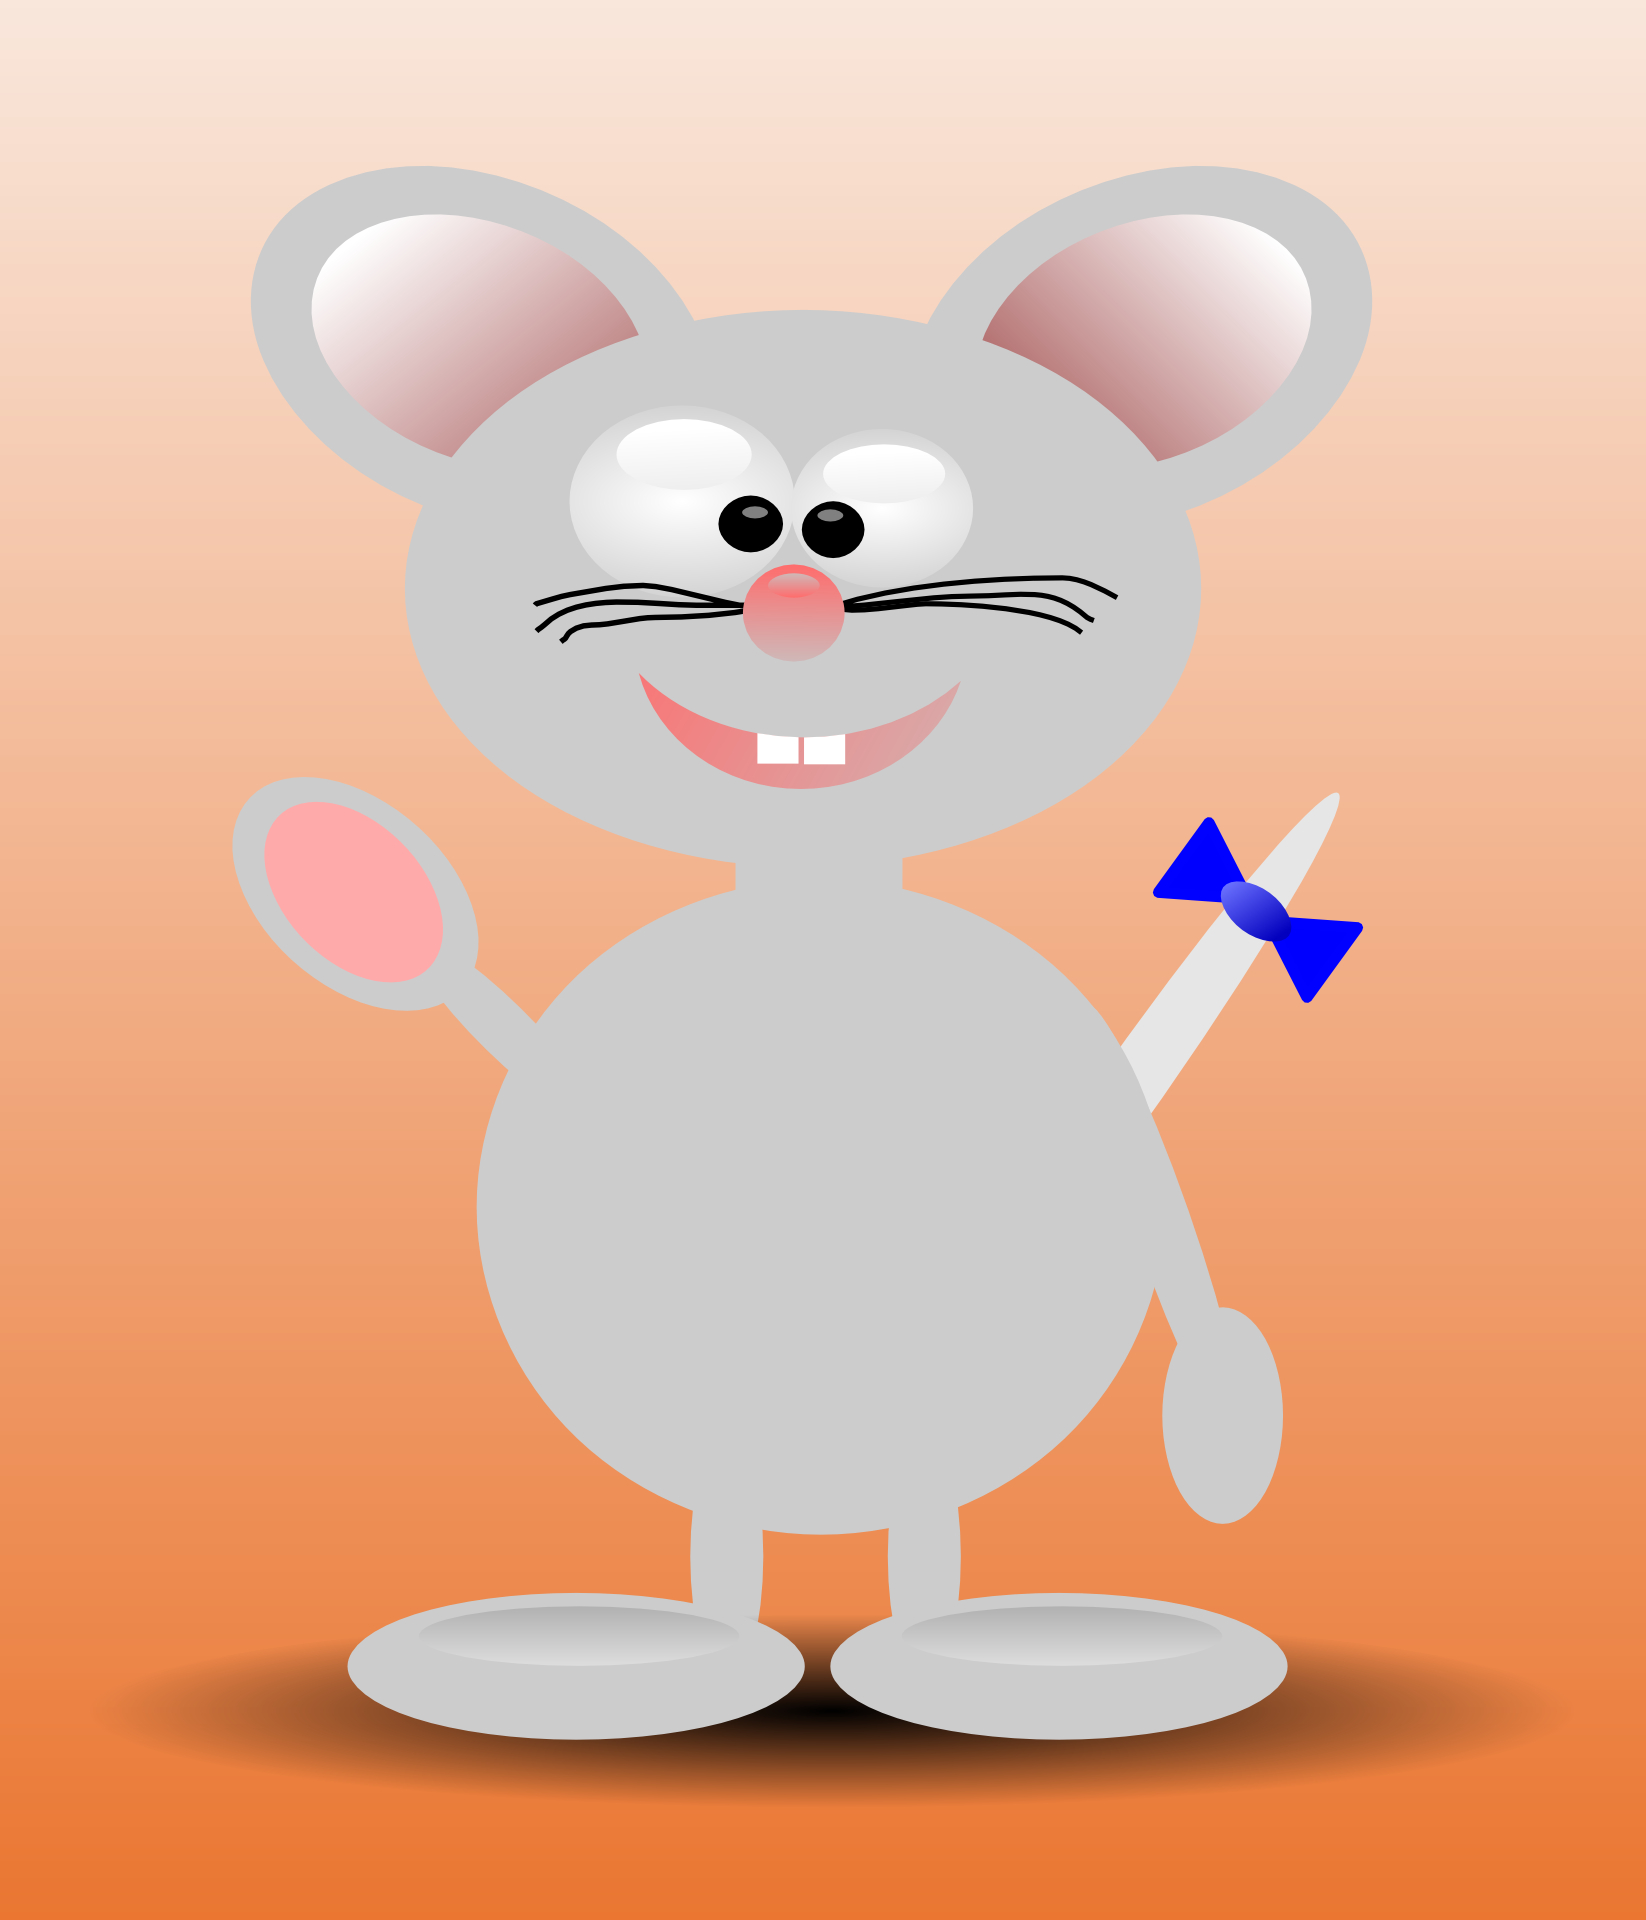 Smiley mouse,cartoon animal vector